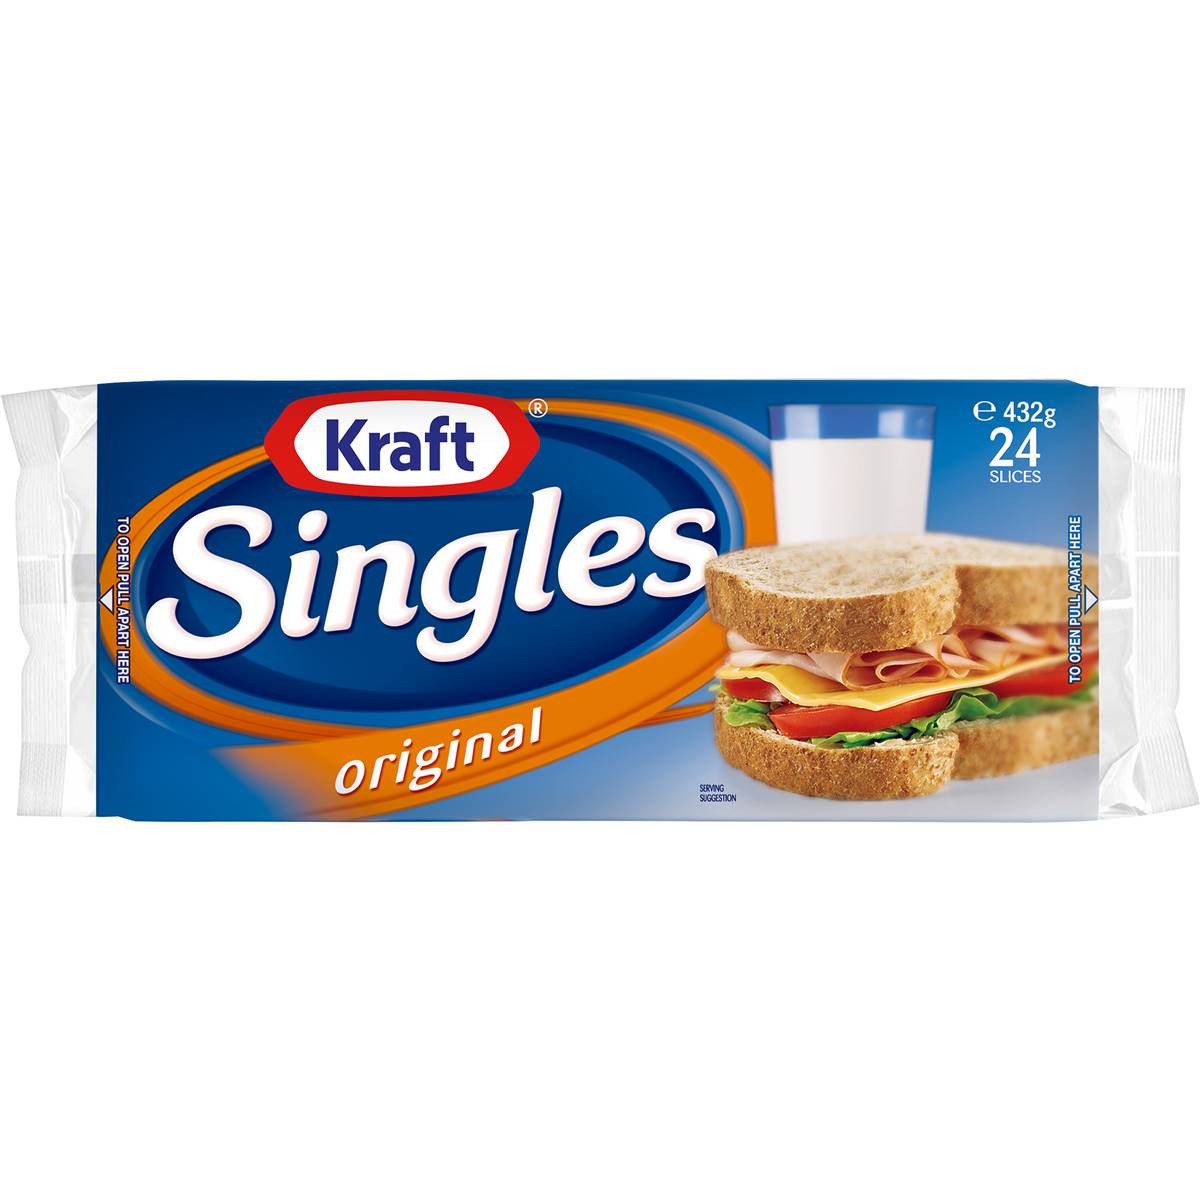 Calories in Kraft Singles Original Original